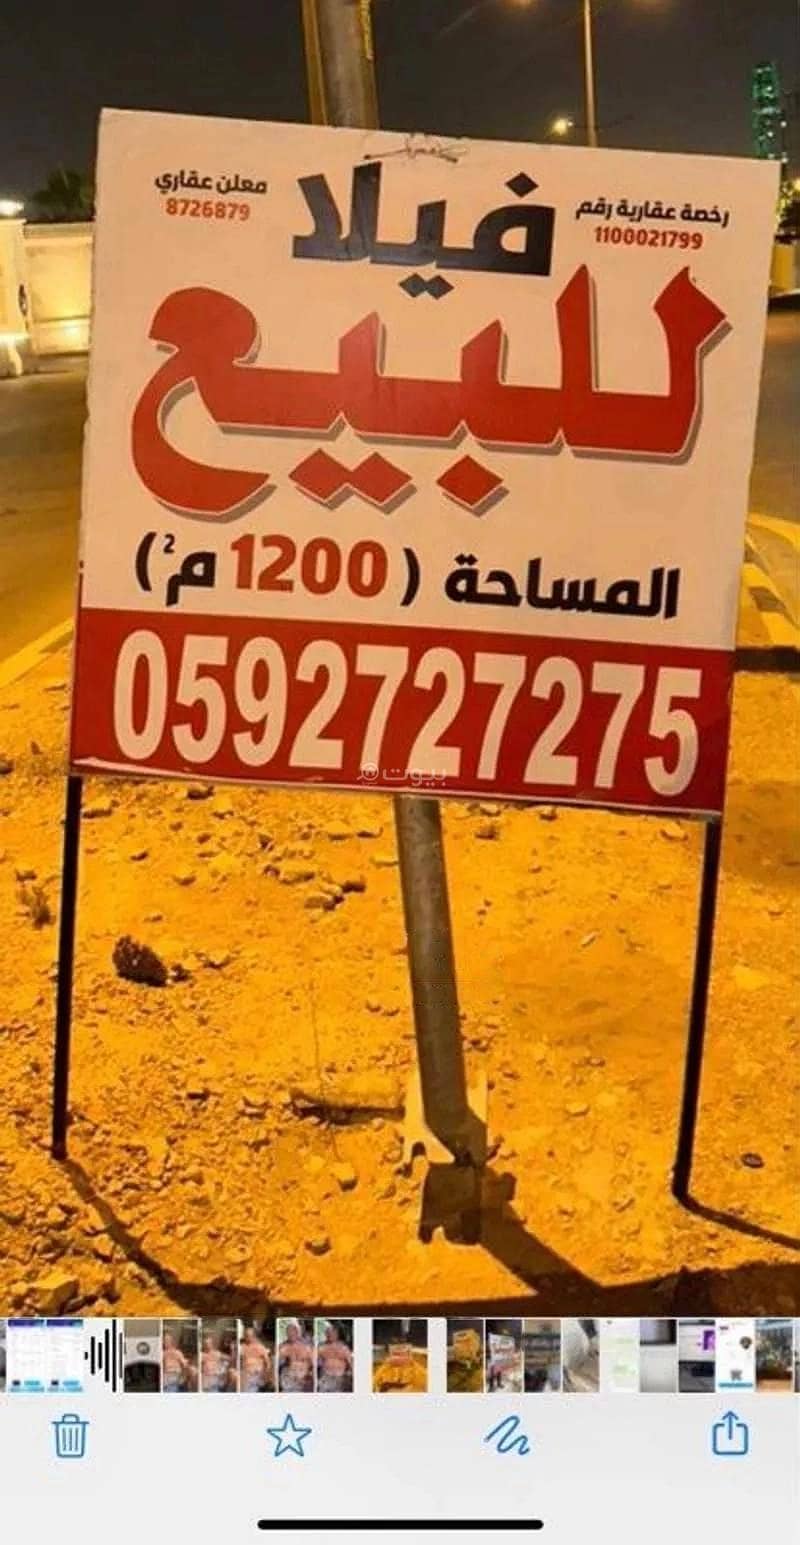 فيلا بـ 25 غرفة للبيع في شارع هجر، حطين، الرياض